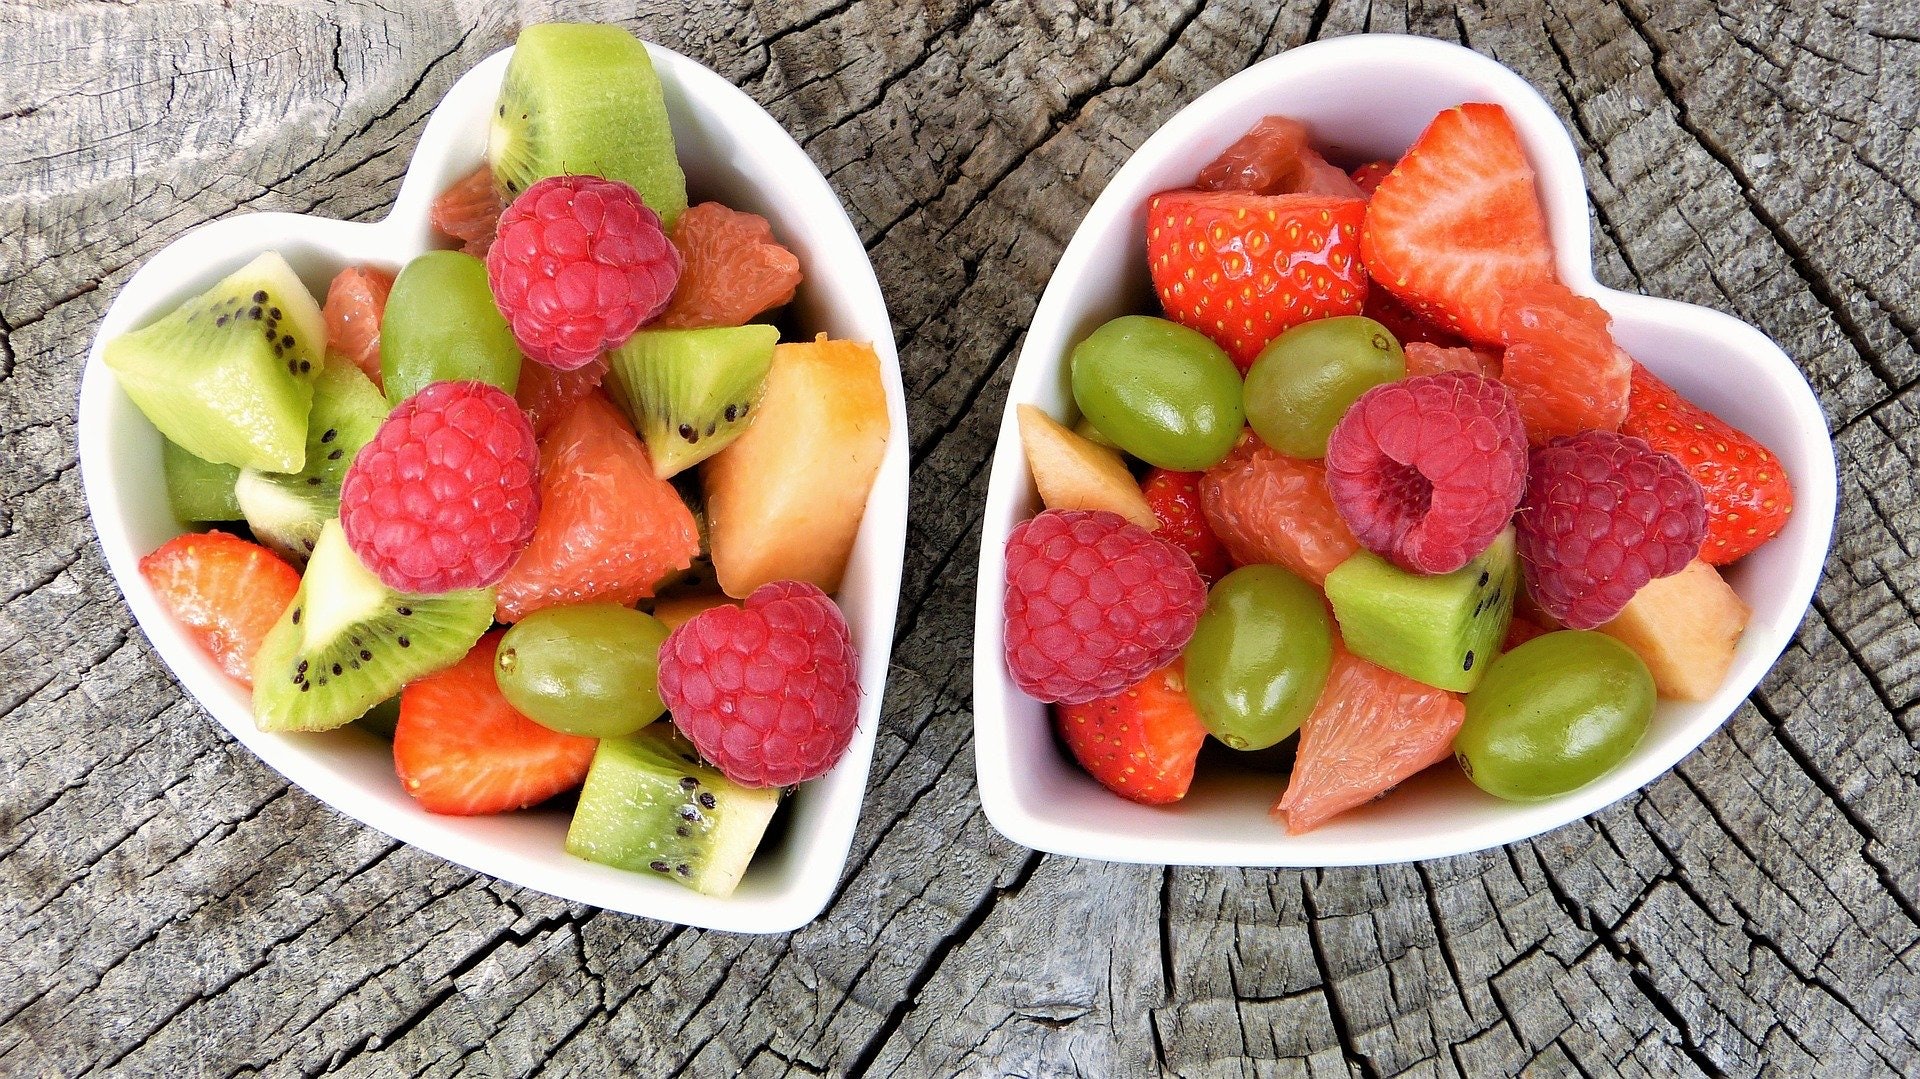 5.此外，邱醫師也建議多吃蔬菜水果，種類愈多元化愈理想。（Pixabay）